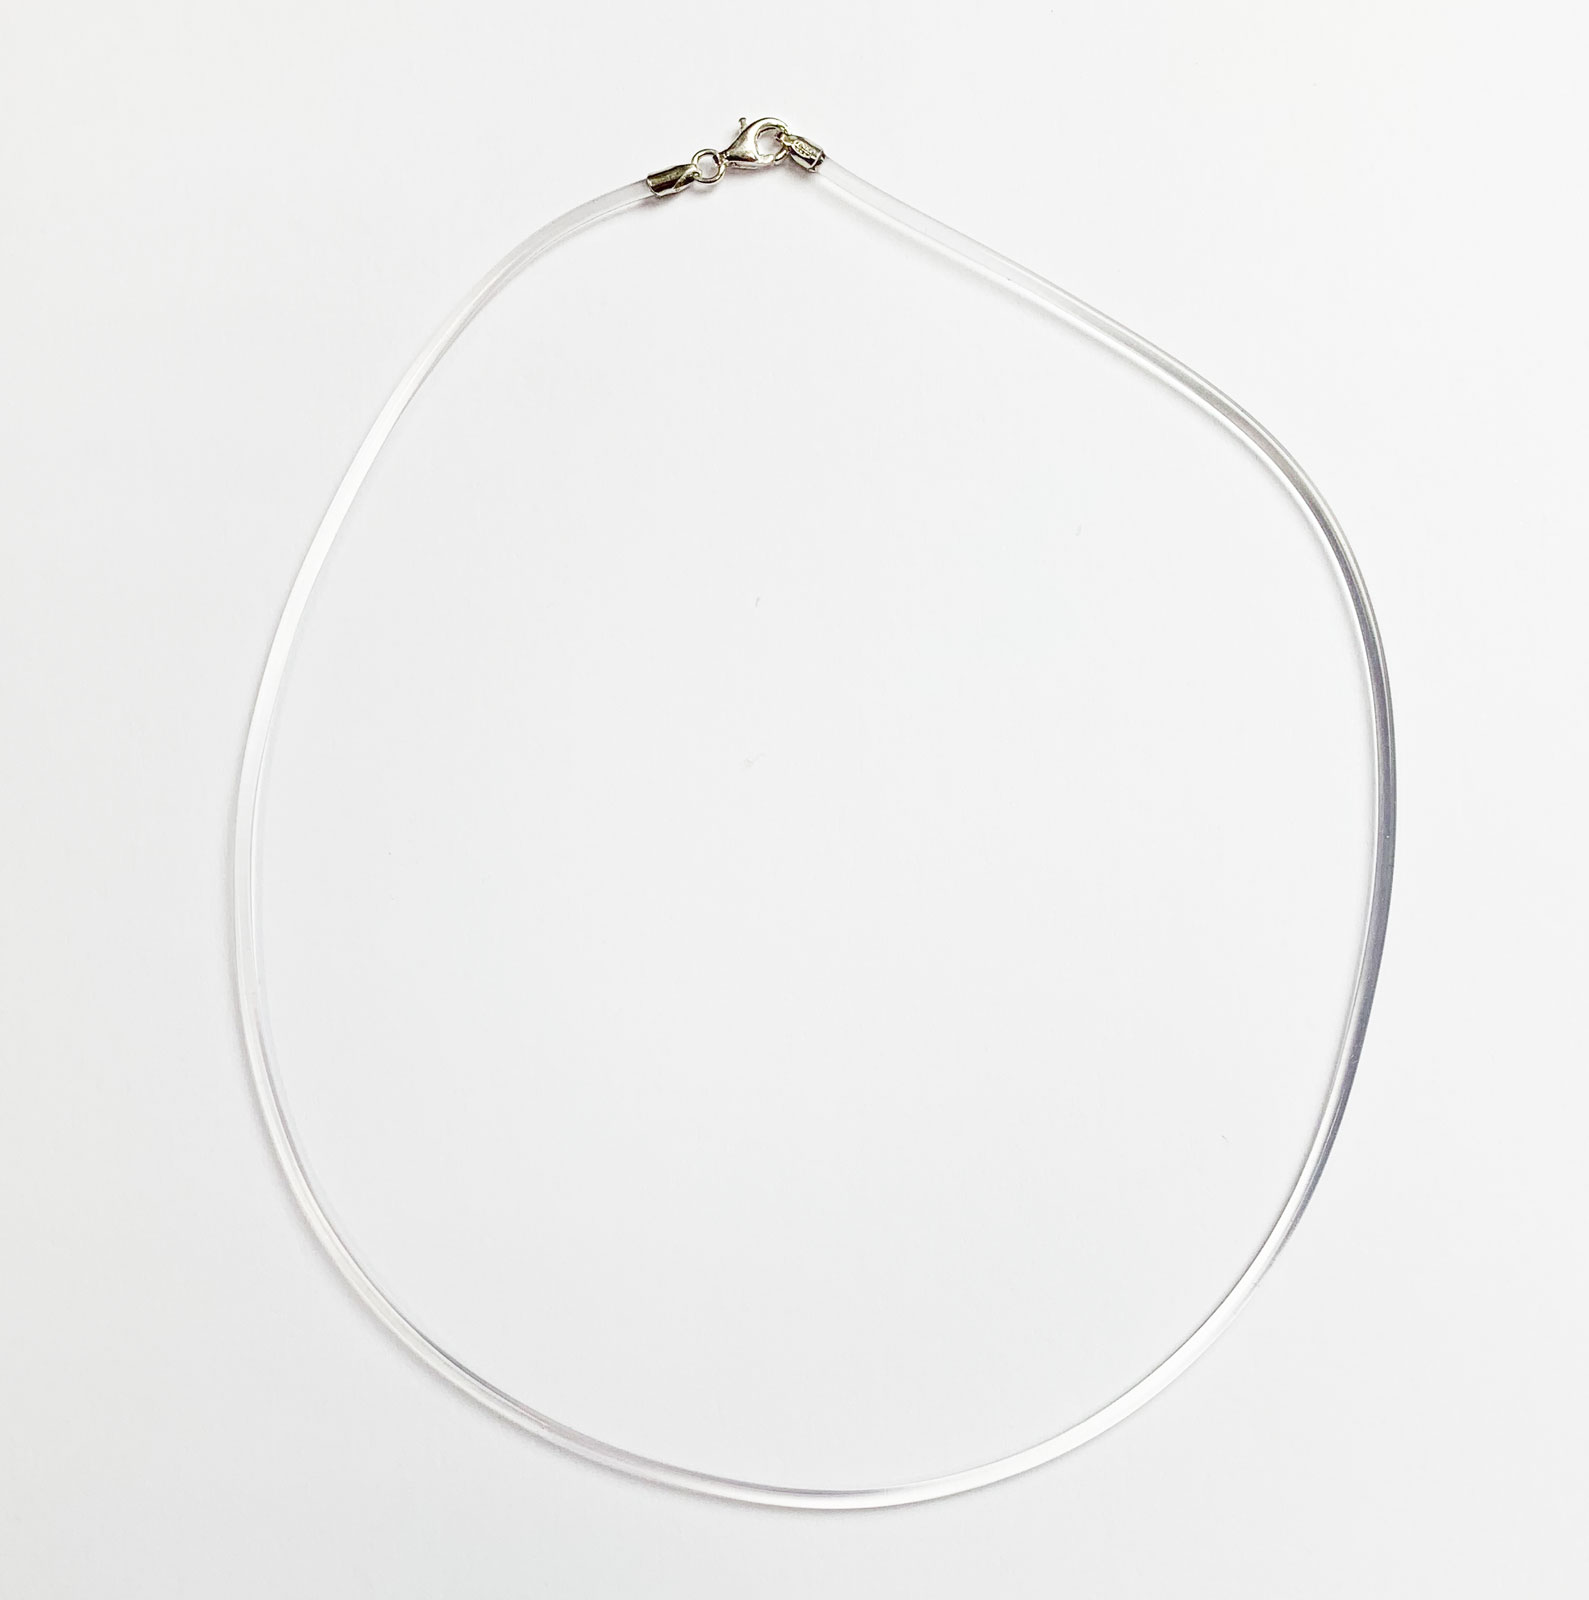 Hals-Kette Kautschukband transparent 42 cm, Verschluss 925er Silber